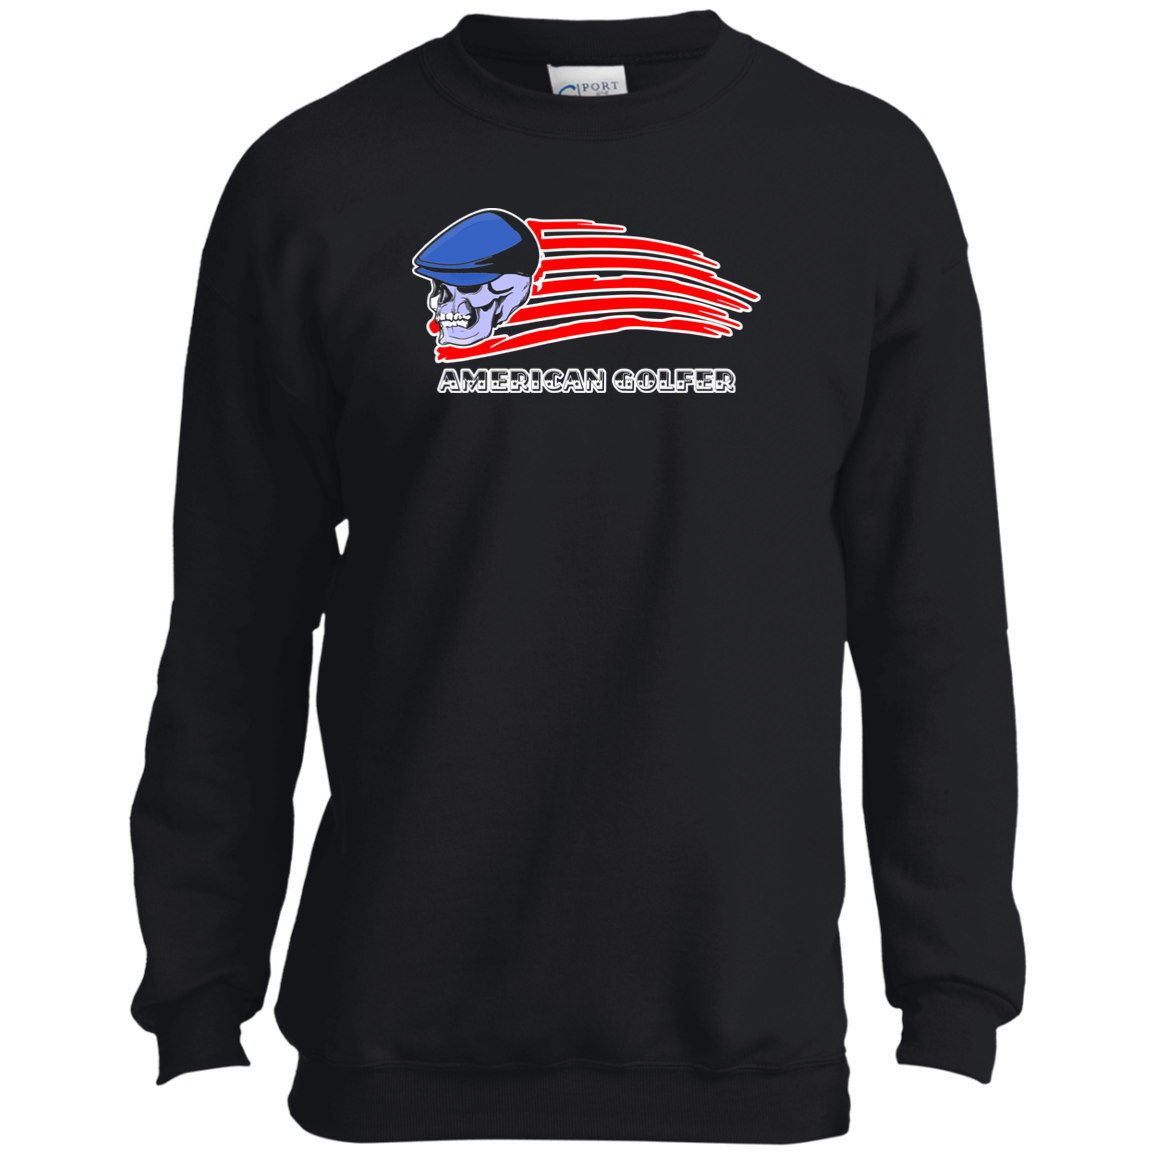 OPG Custom Design #12. Golf America. Male Edition. Youth Crewneck Sweatshirt